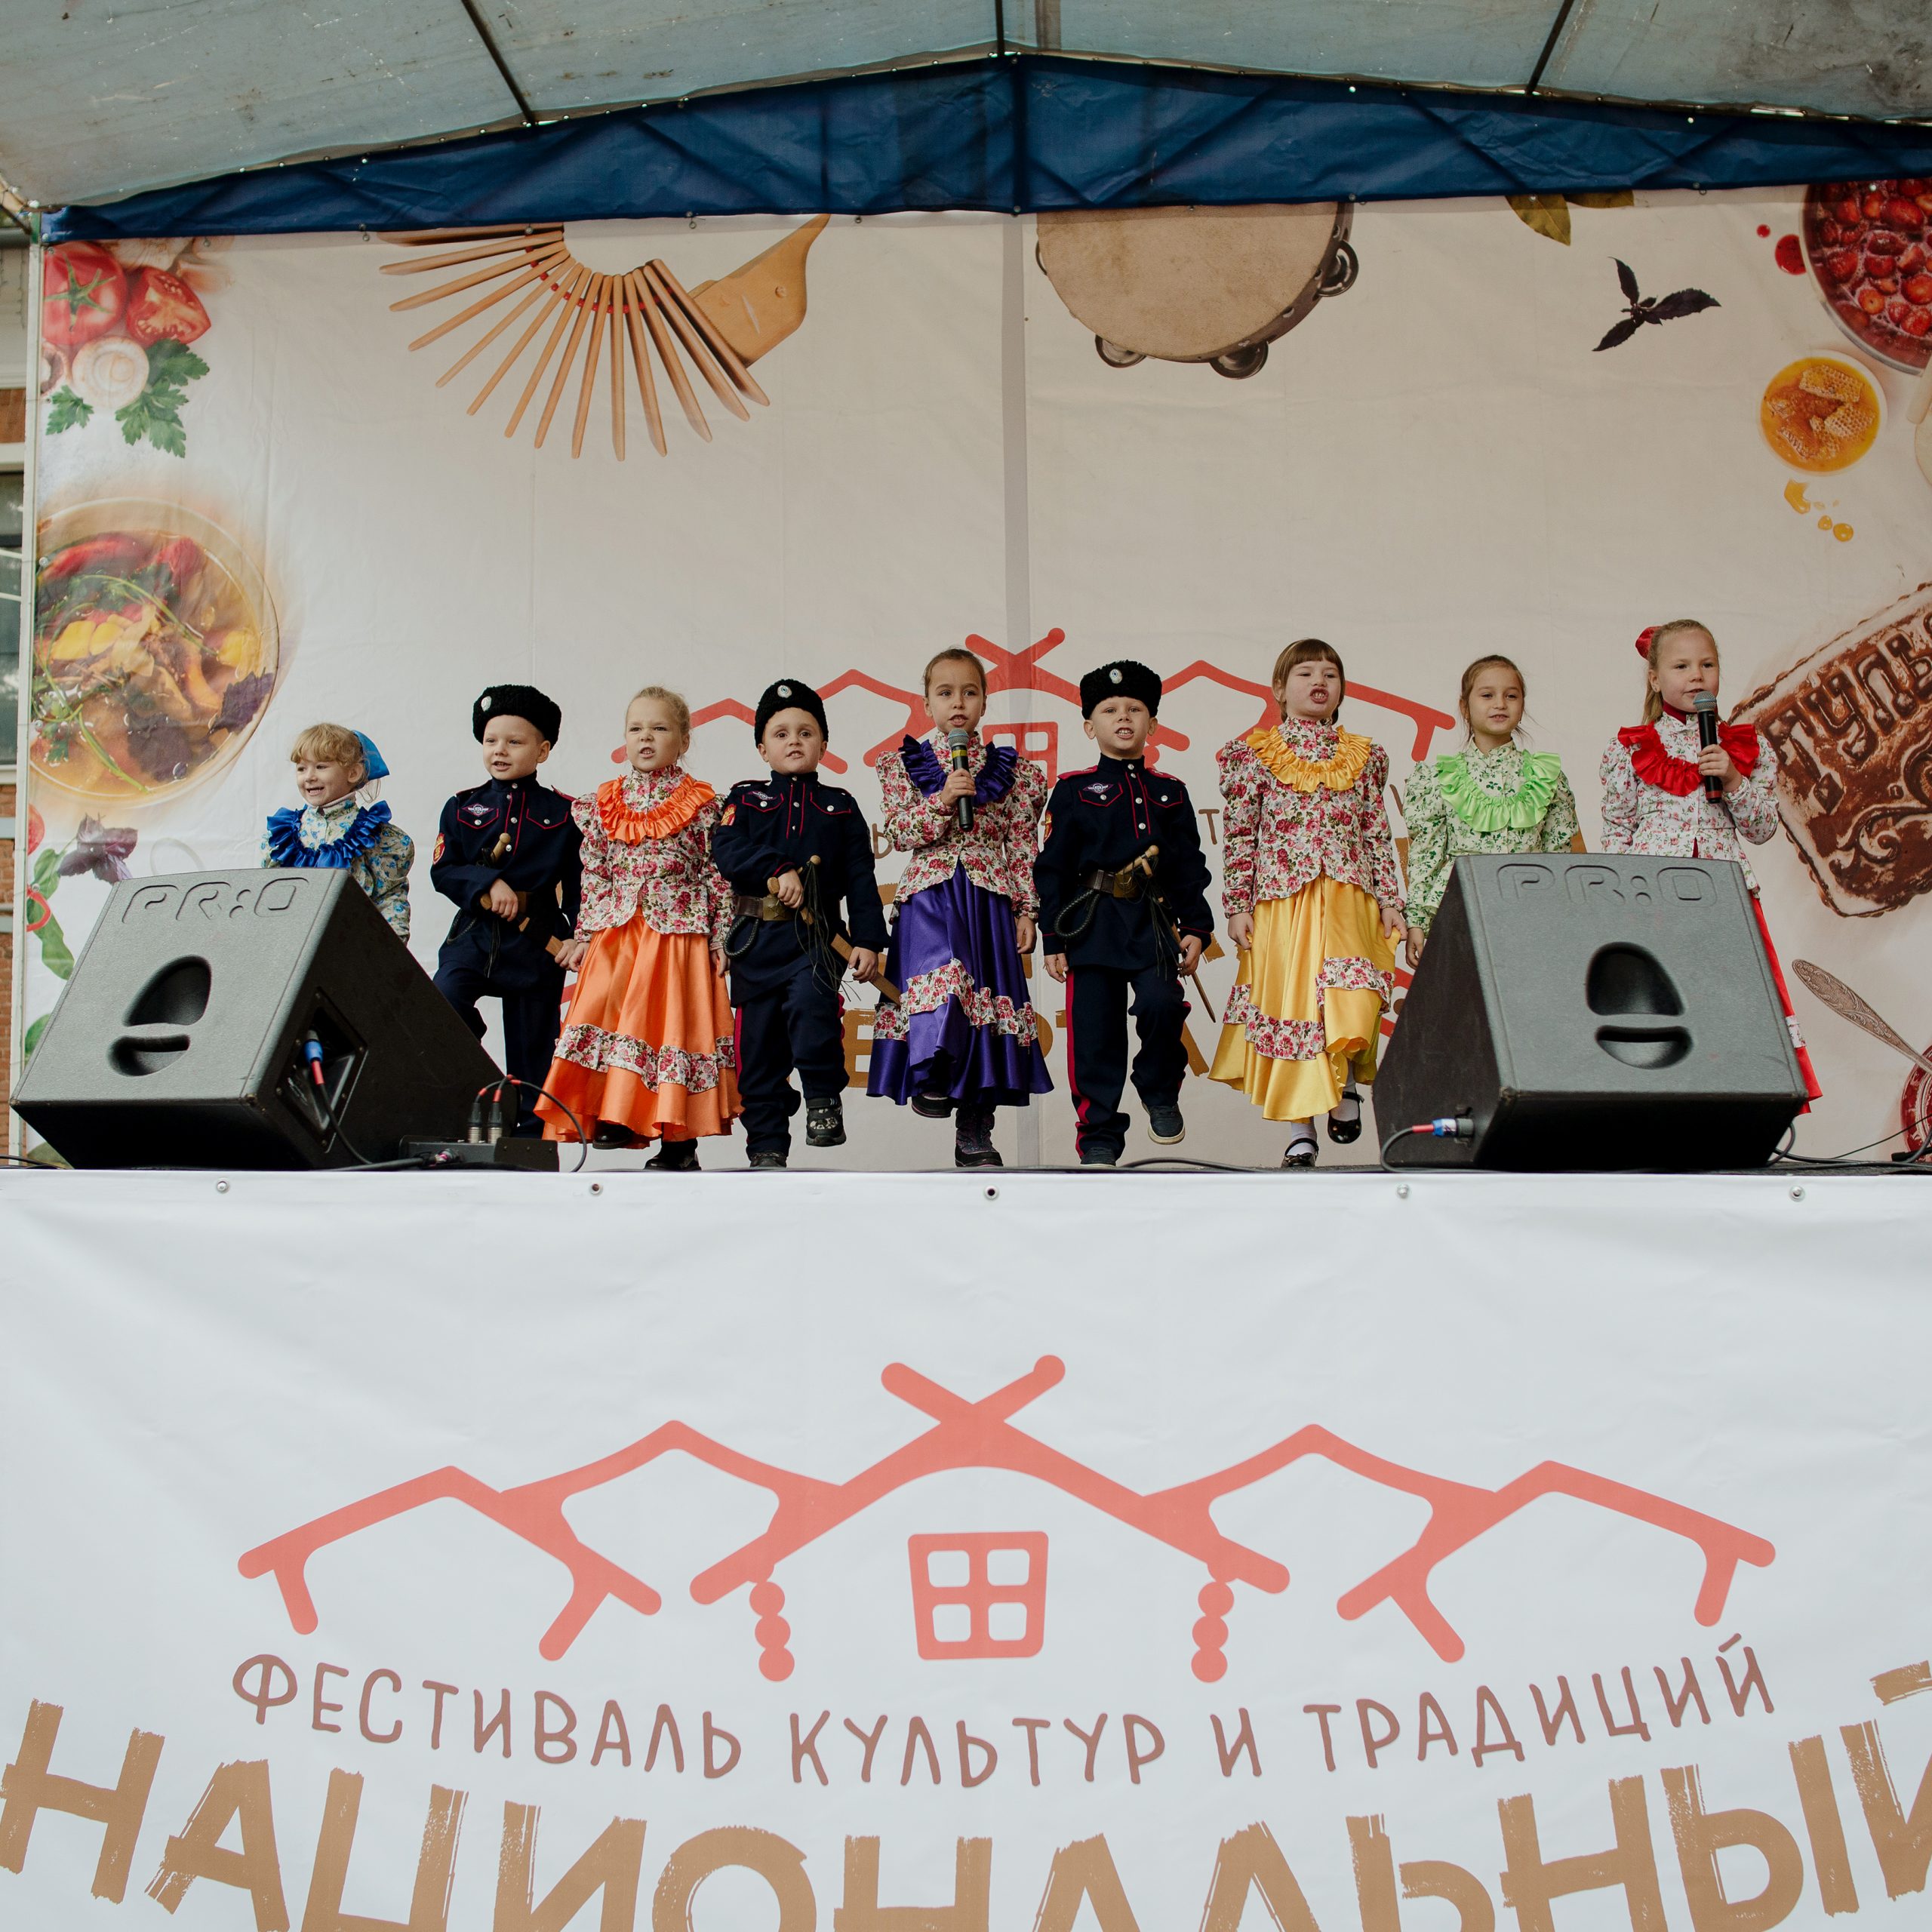 Тульские казаки на фестивале «Национальный квартал»